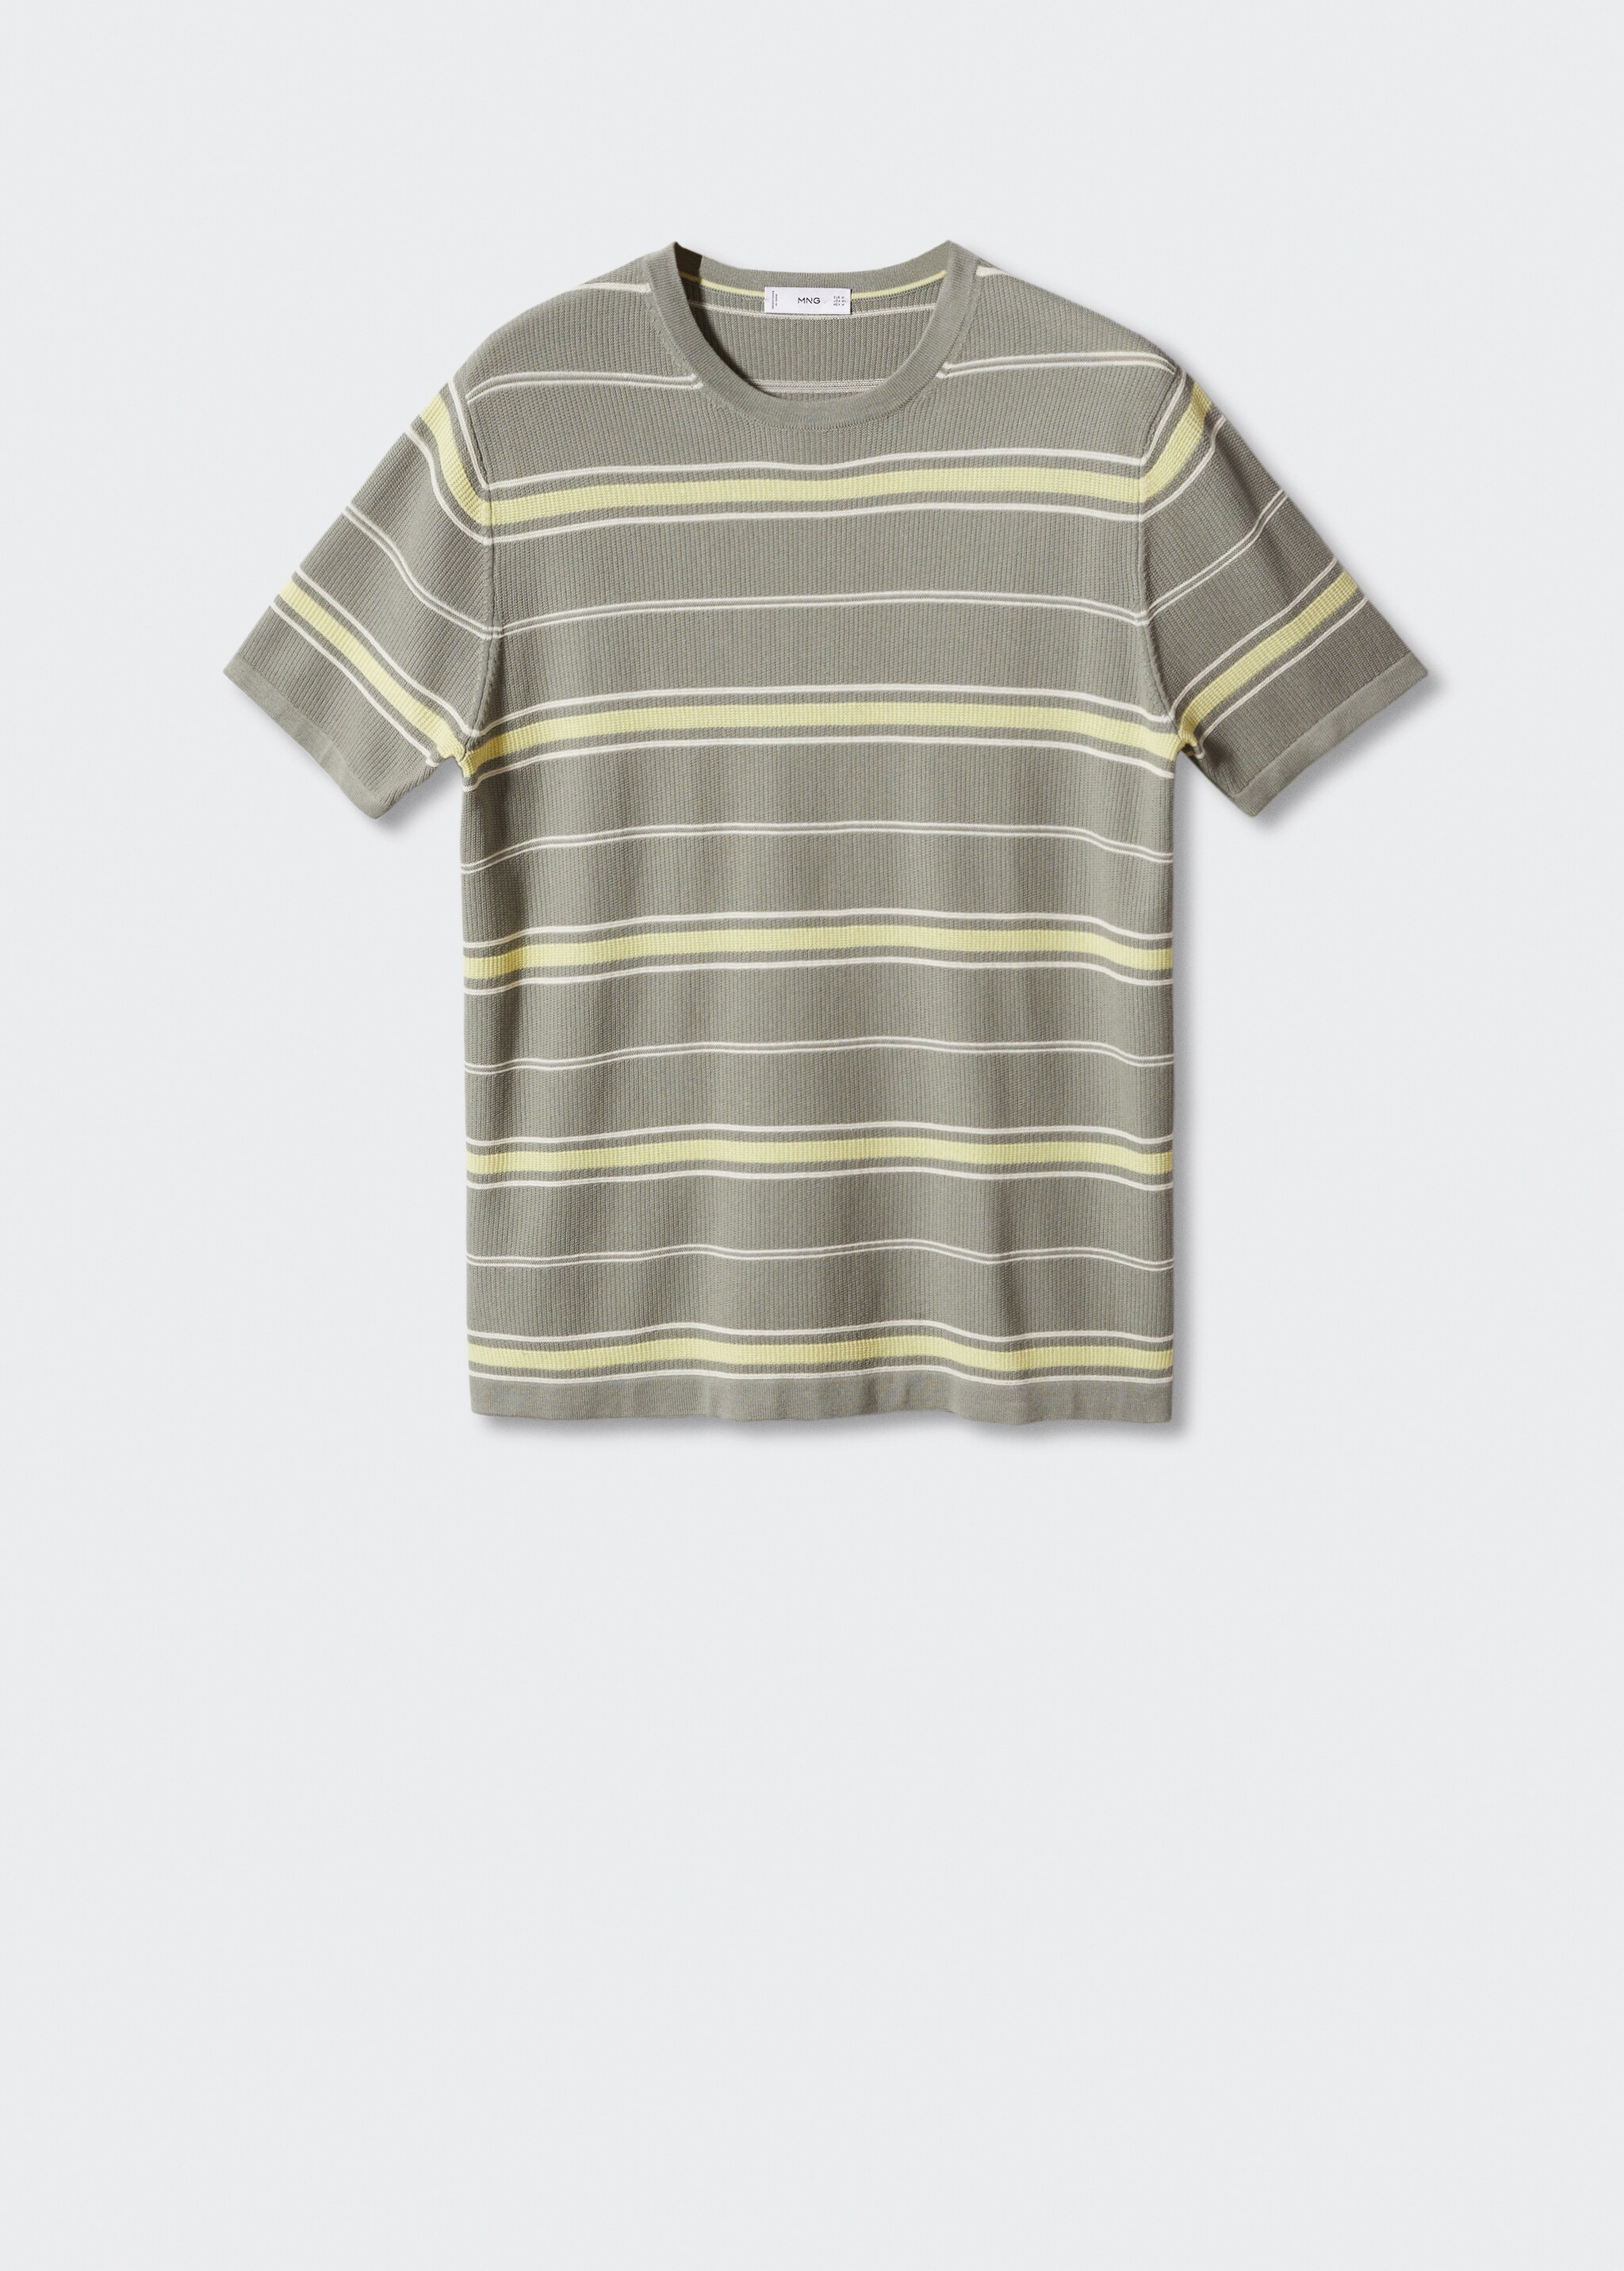 Camiseta 100% algodón estructura rayas - Artículo sin modelo